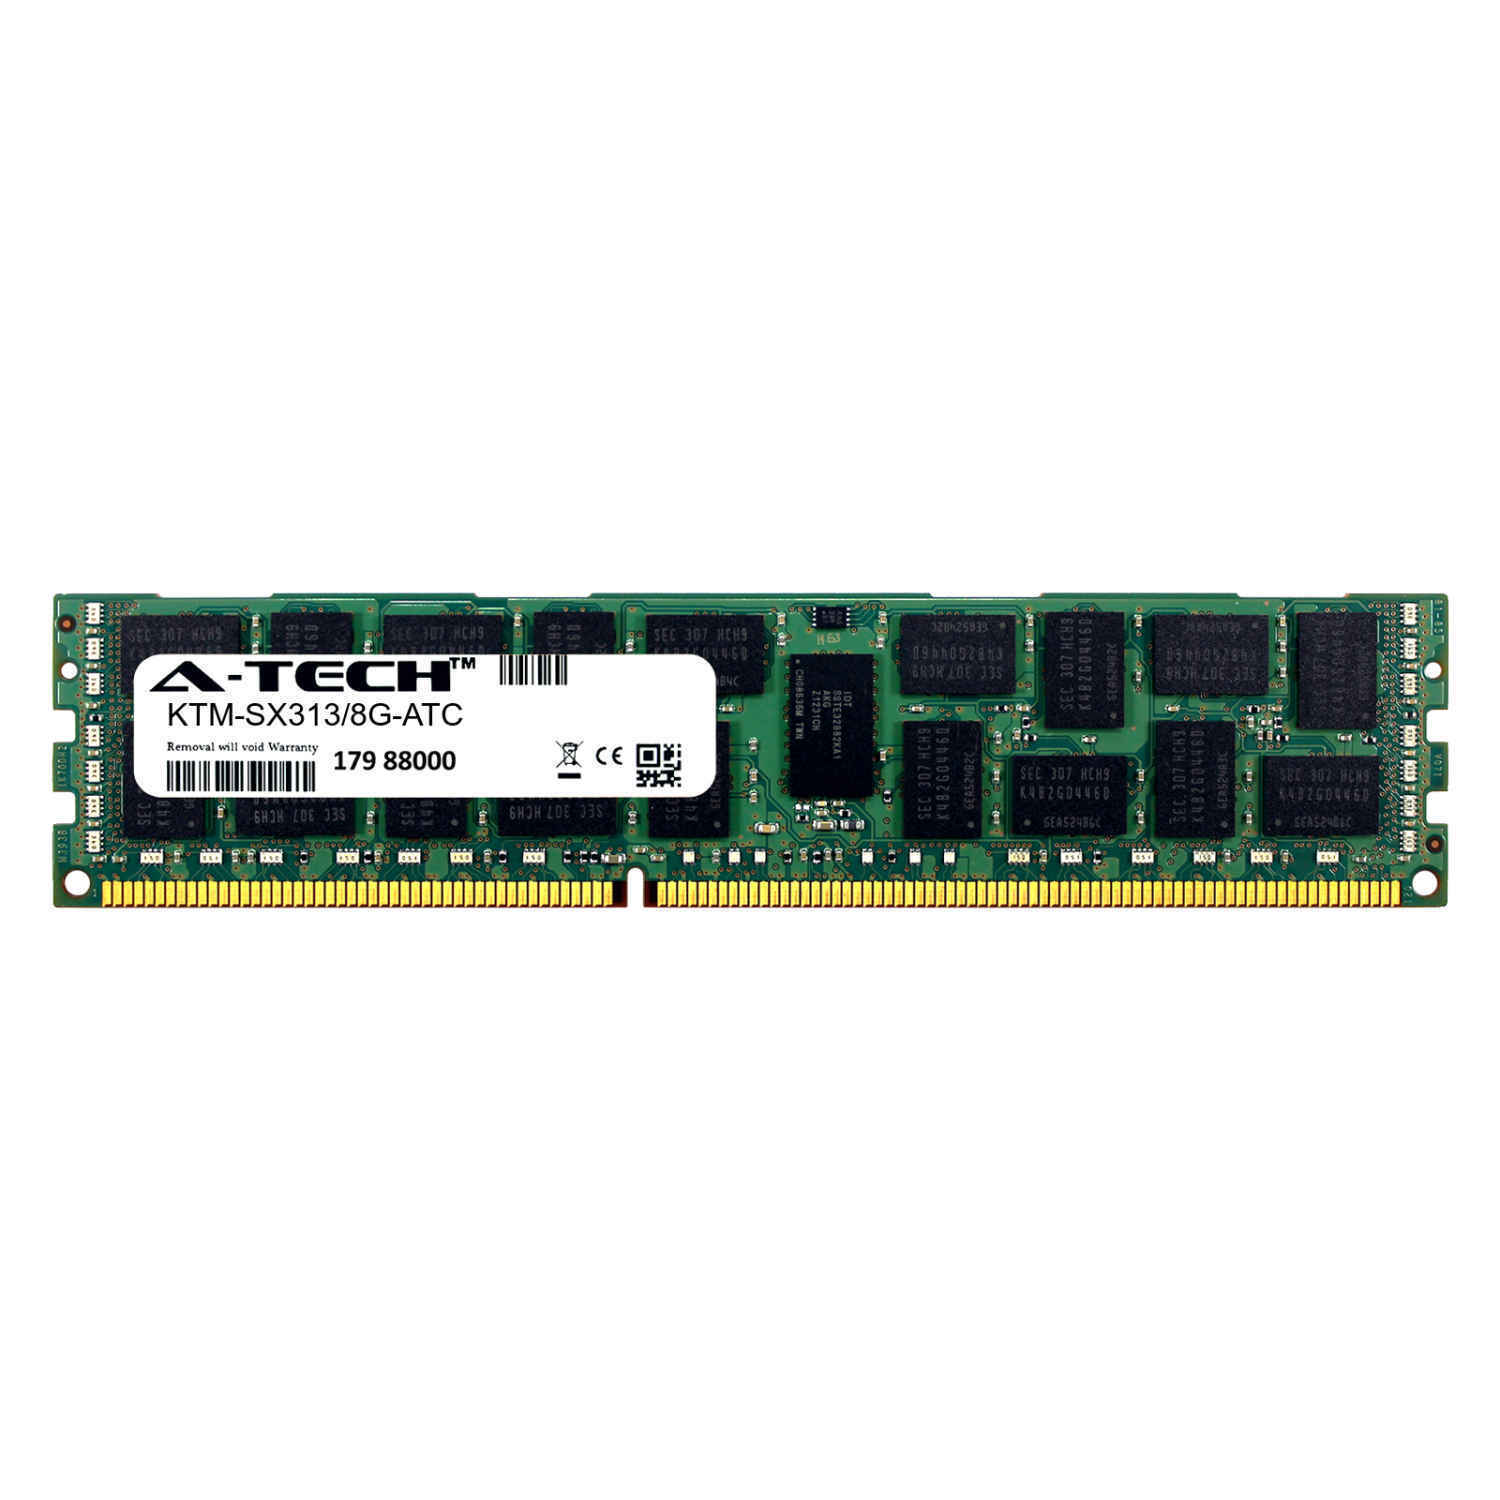 8GB DDR3 PC3-10600R RDIMM (Kingston KTM-SX313/8G Equivalent) Server Memory RAM